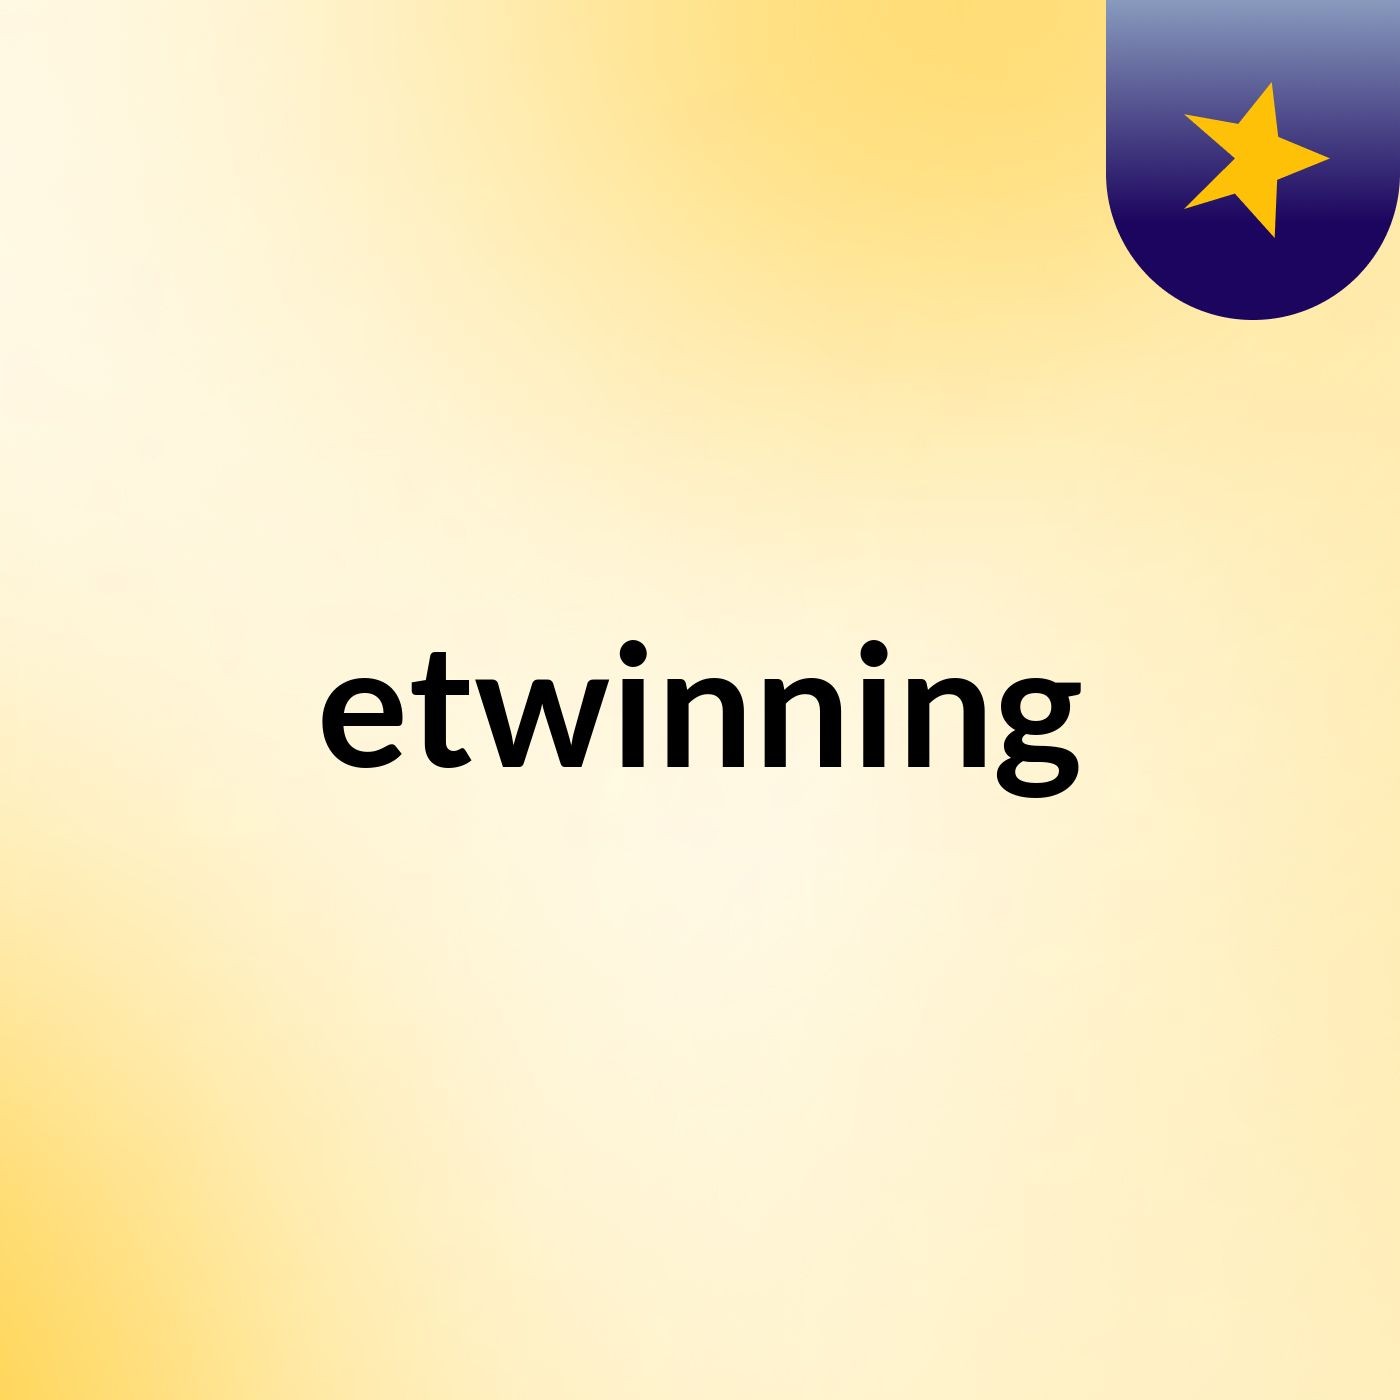 etwinning